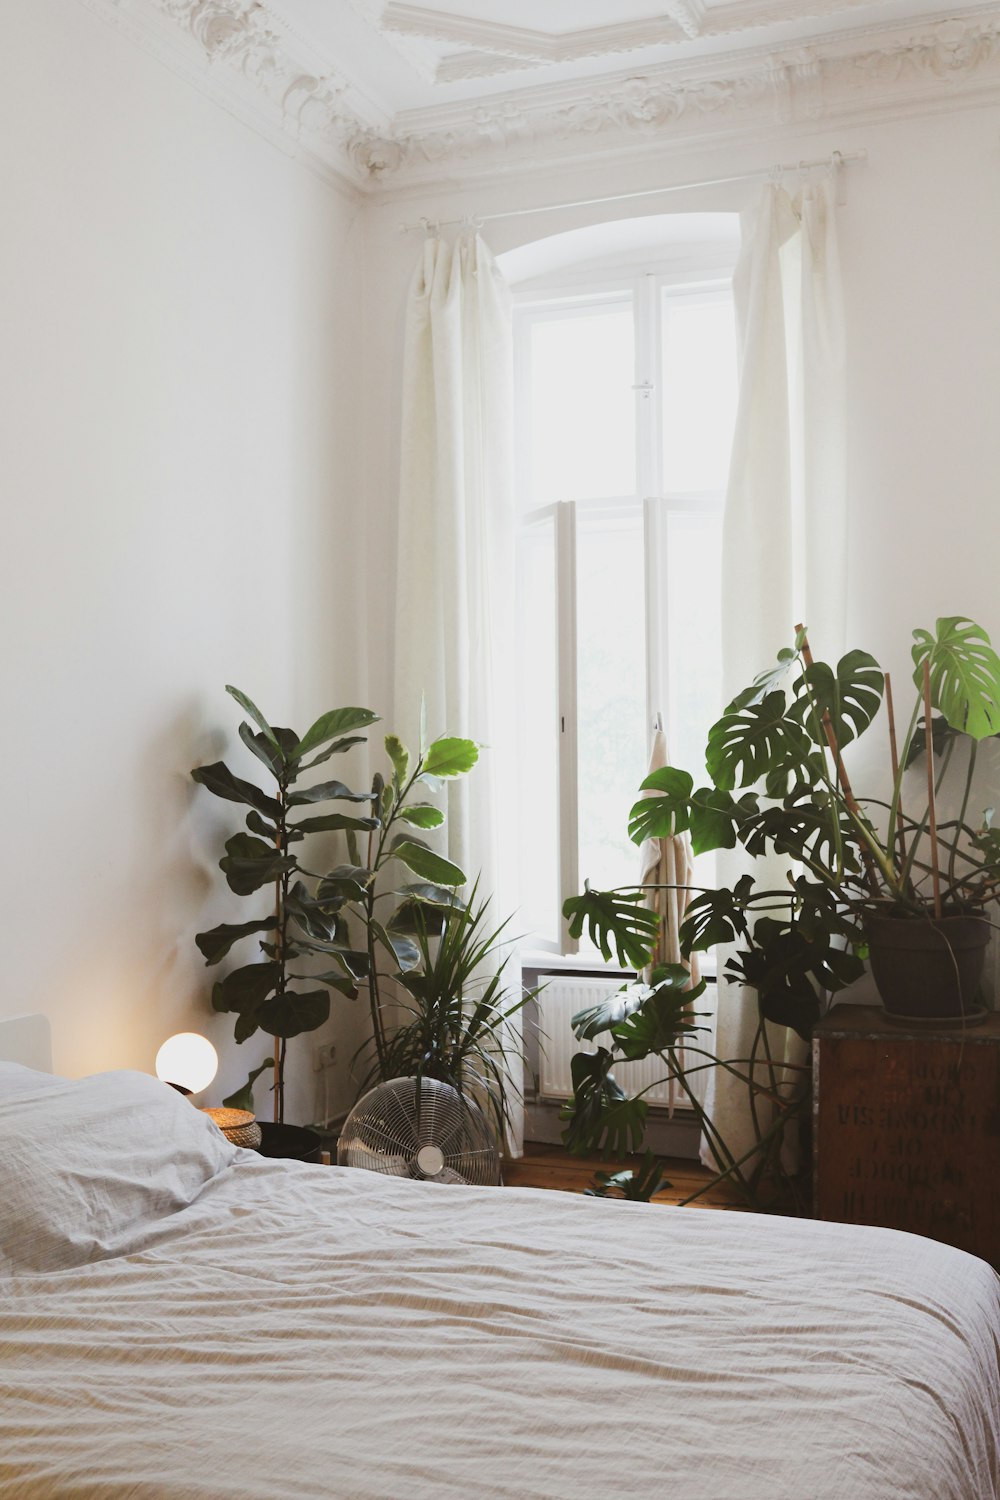 pianta verde in vaso vicino al letto